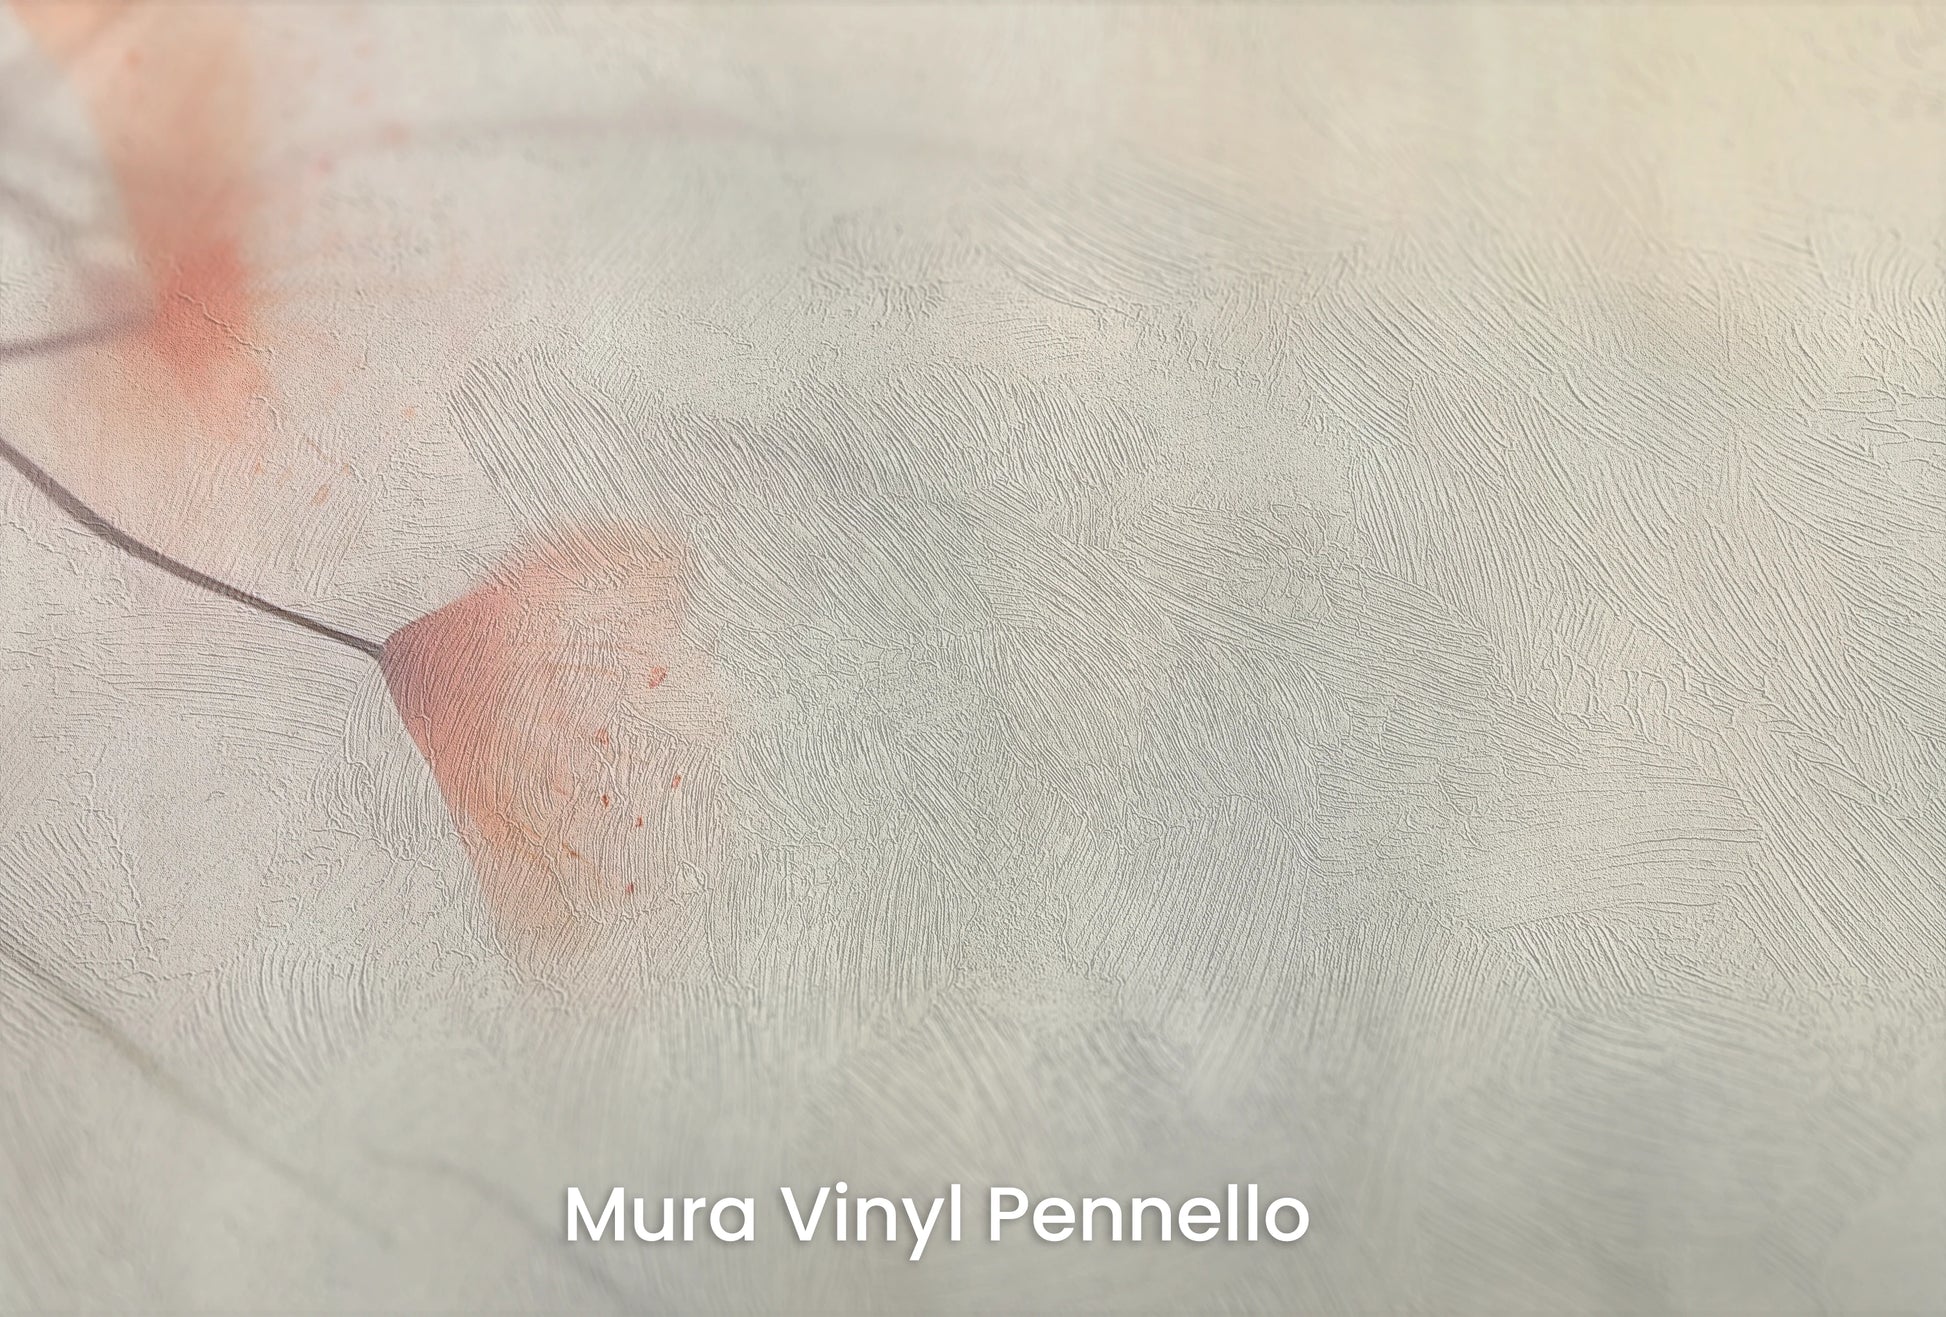 Zbliżenie na artystyczną fototapetę o nazwie Heron's Solitude na podłożu Mura Vinyl Pennello - faktura pociągnięć pędzla malarskiego.